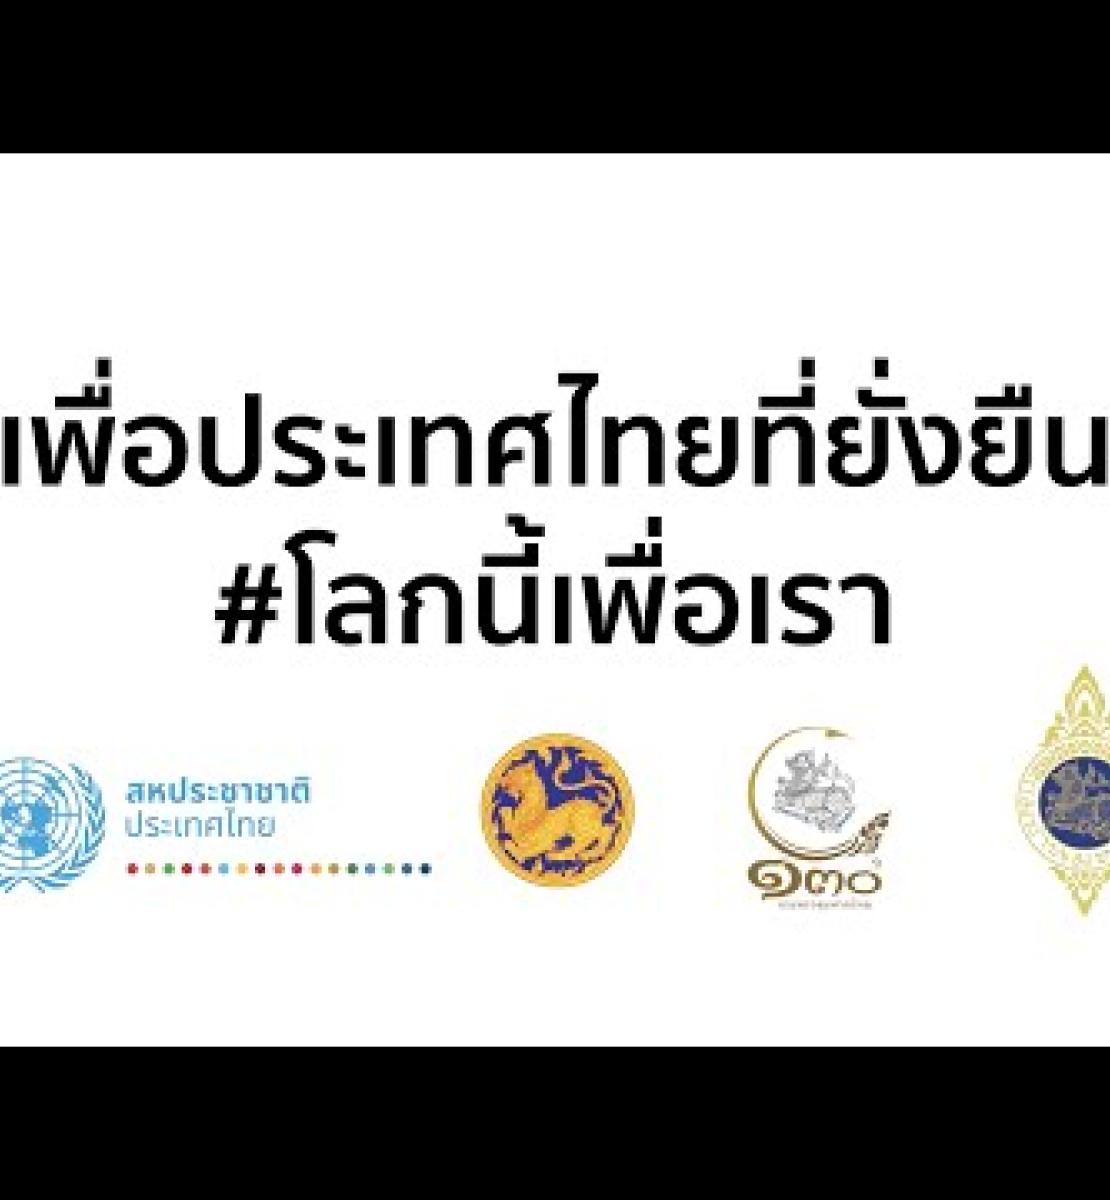 Шаг в будущее: все 76 губернаторов Таиланда подписали пакт о продвижении ЦУР, в котором особое место занимает климатическая повестка